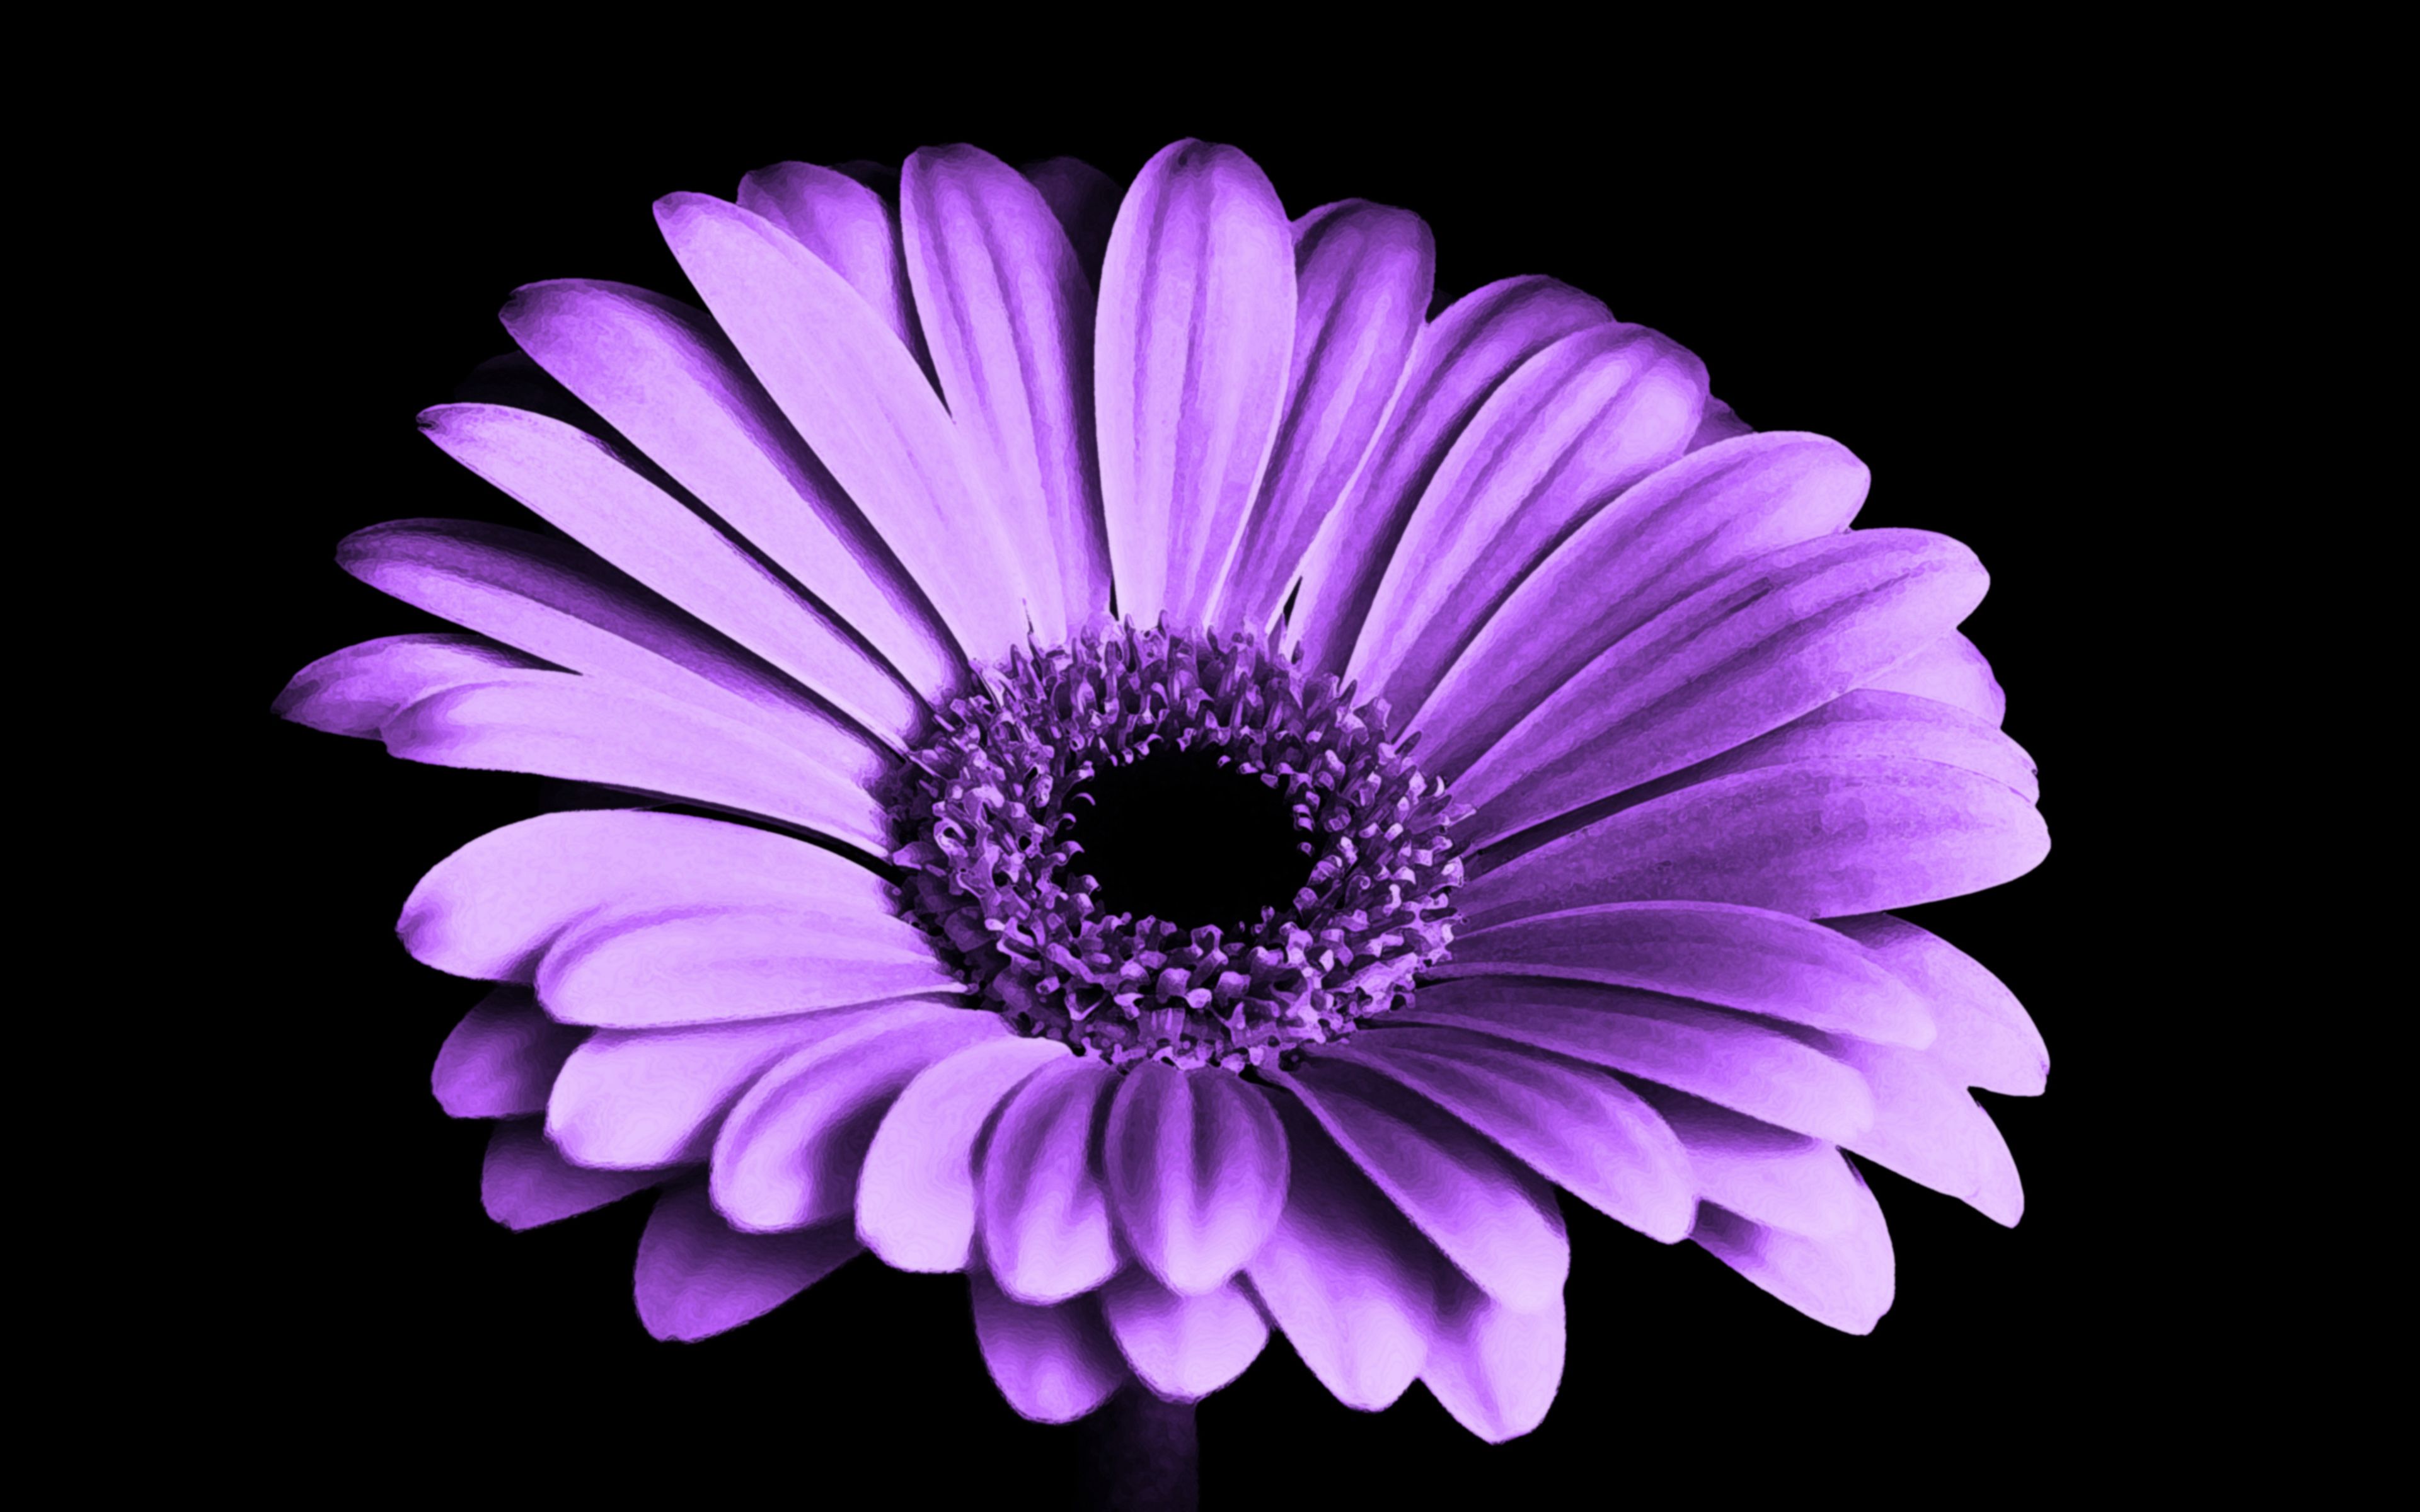 Violet Daisy Flower 4K Wallpaper Download Resolution 4K